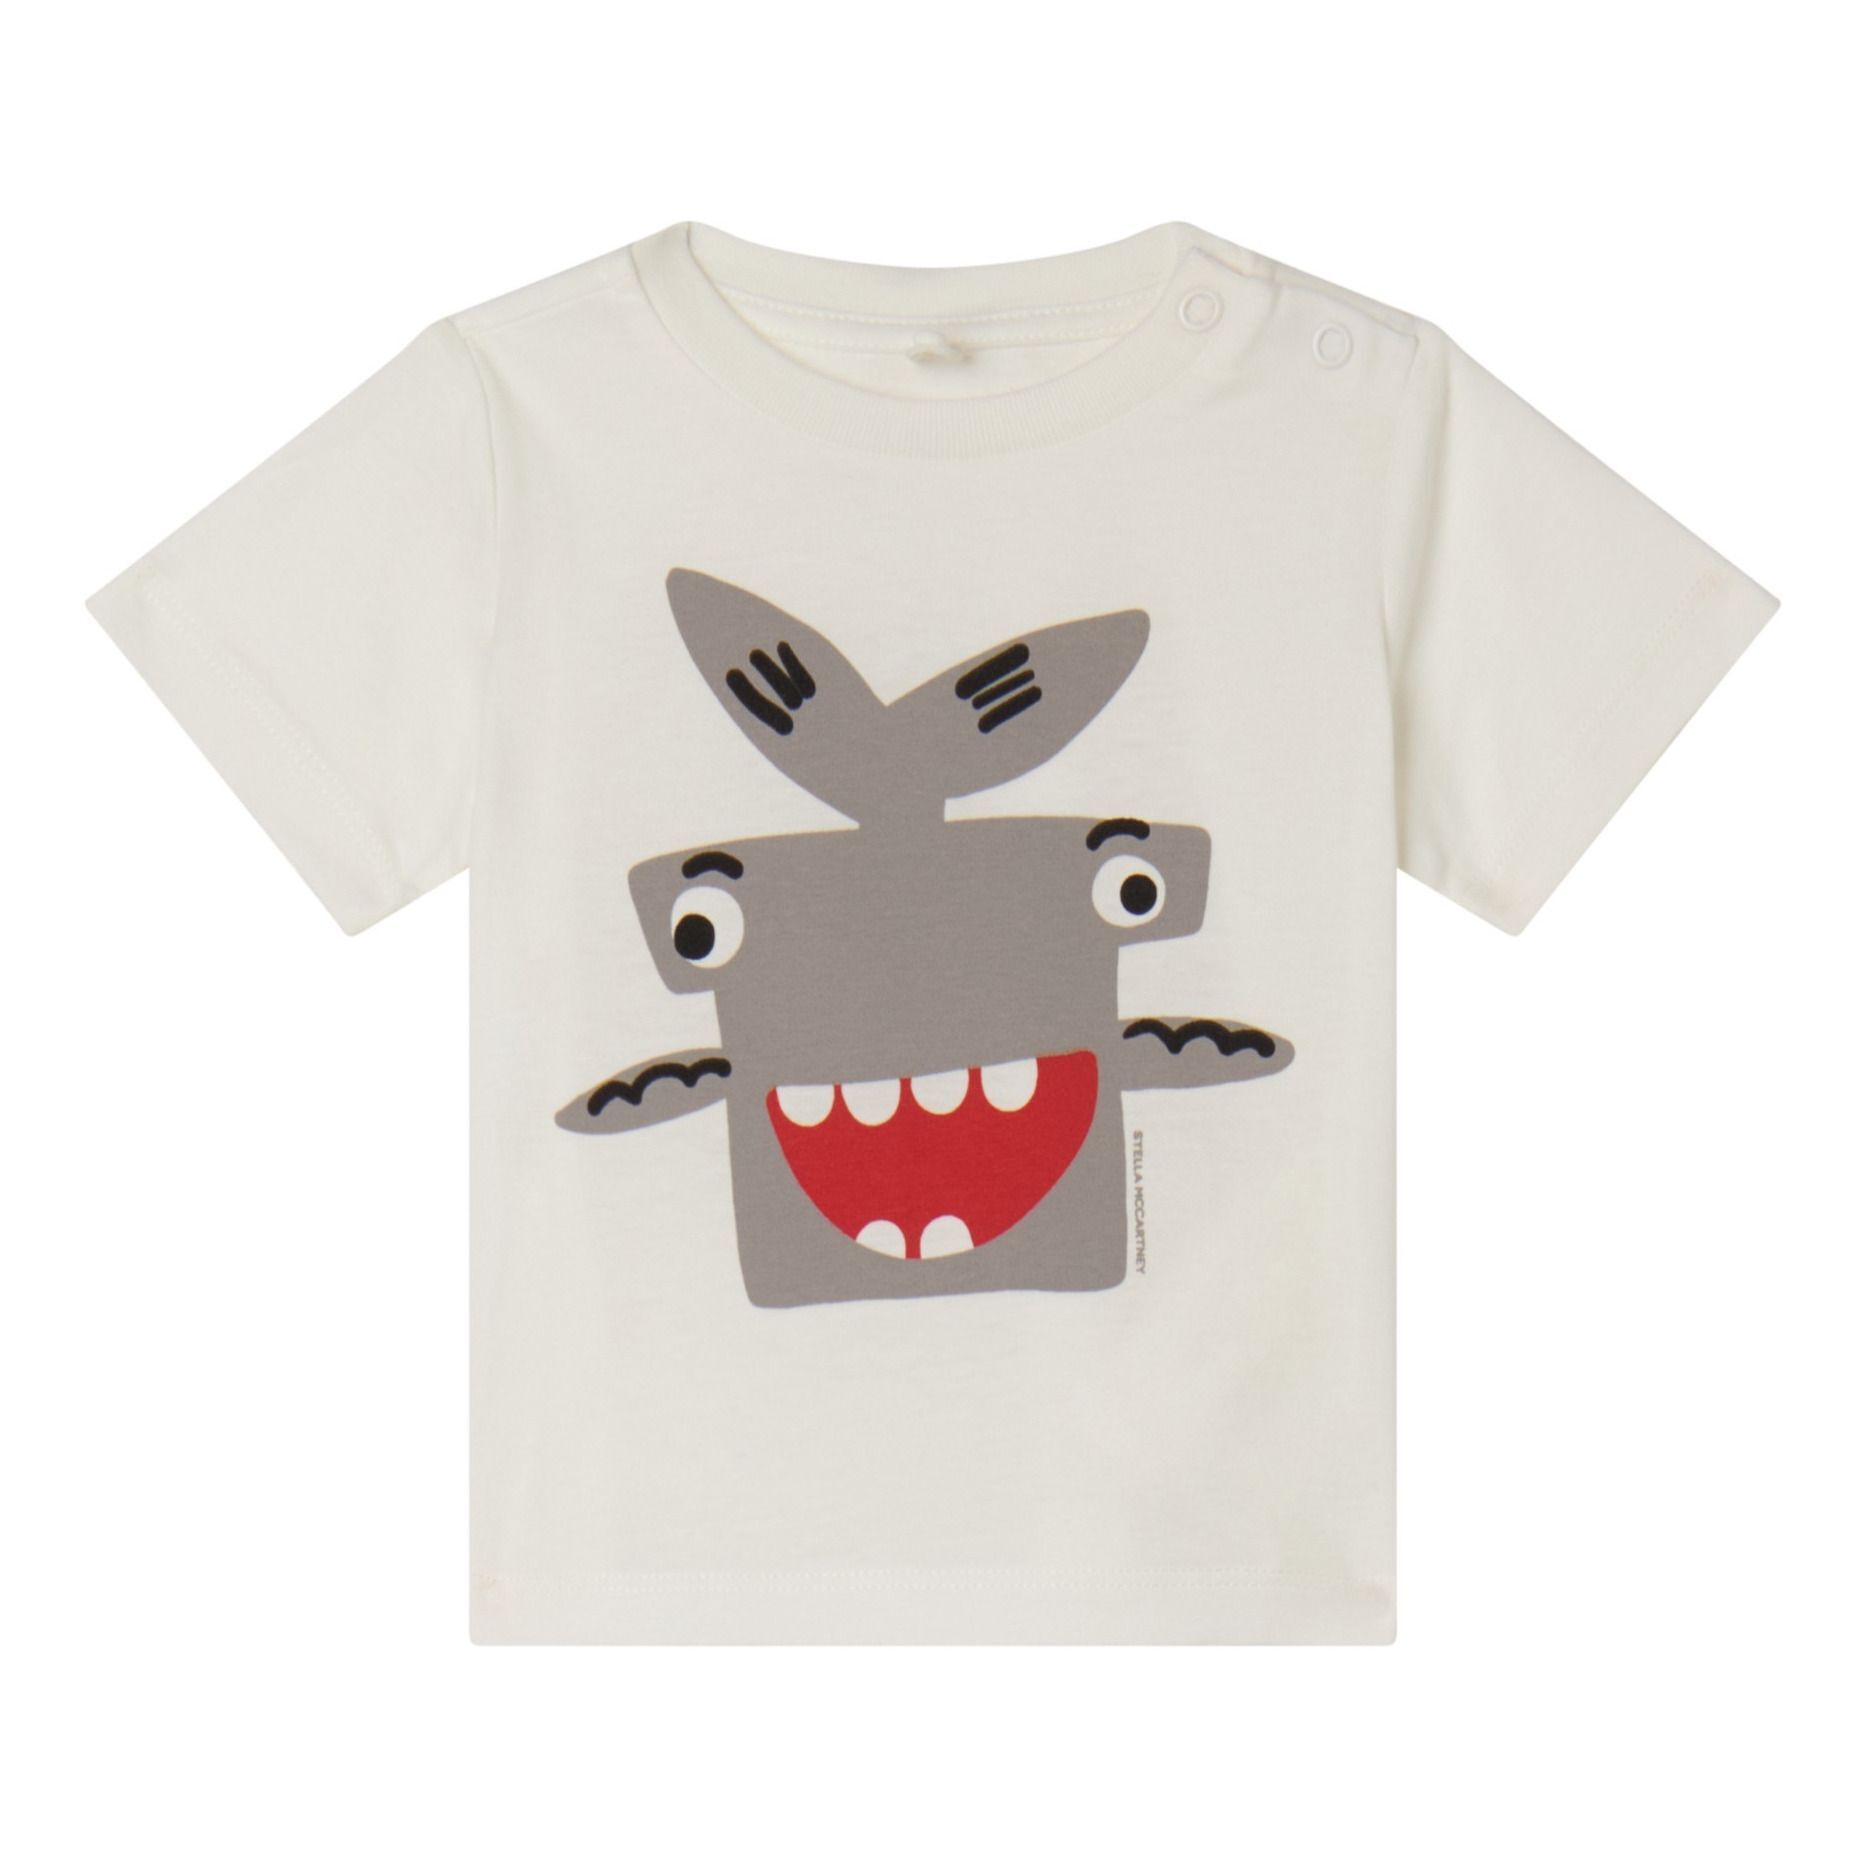 Stella McCartney Kids Baby Shark T-Shirt Ecru 6 months Boy